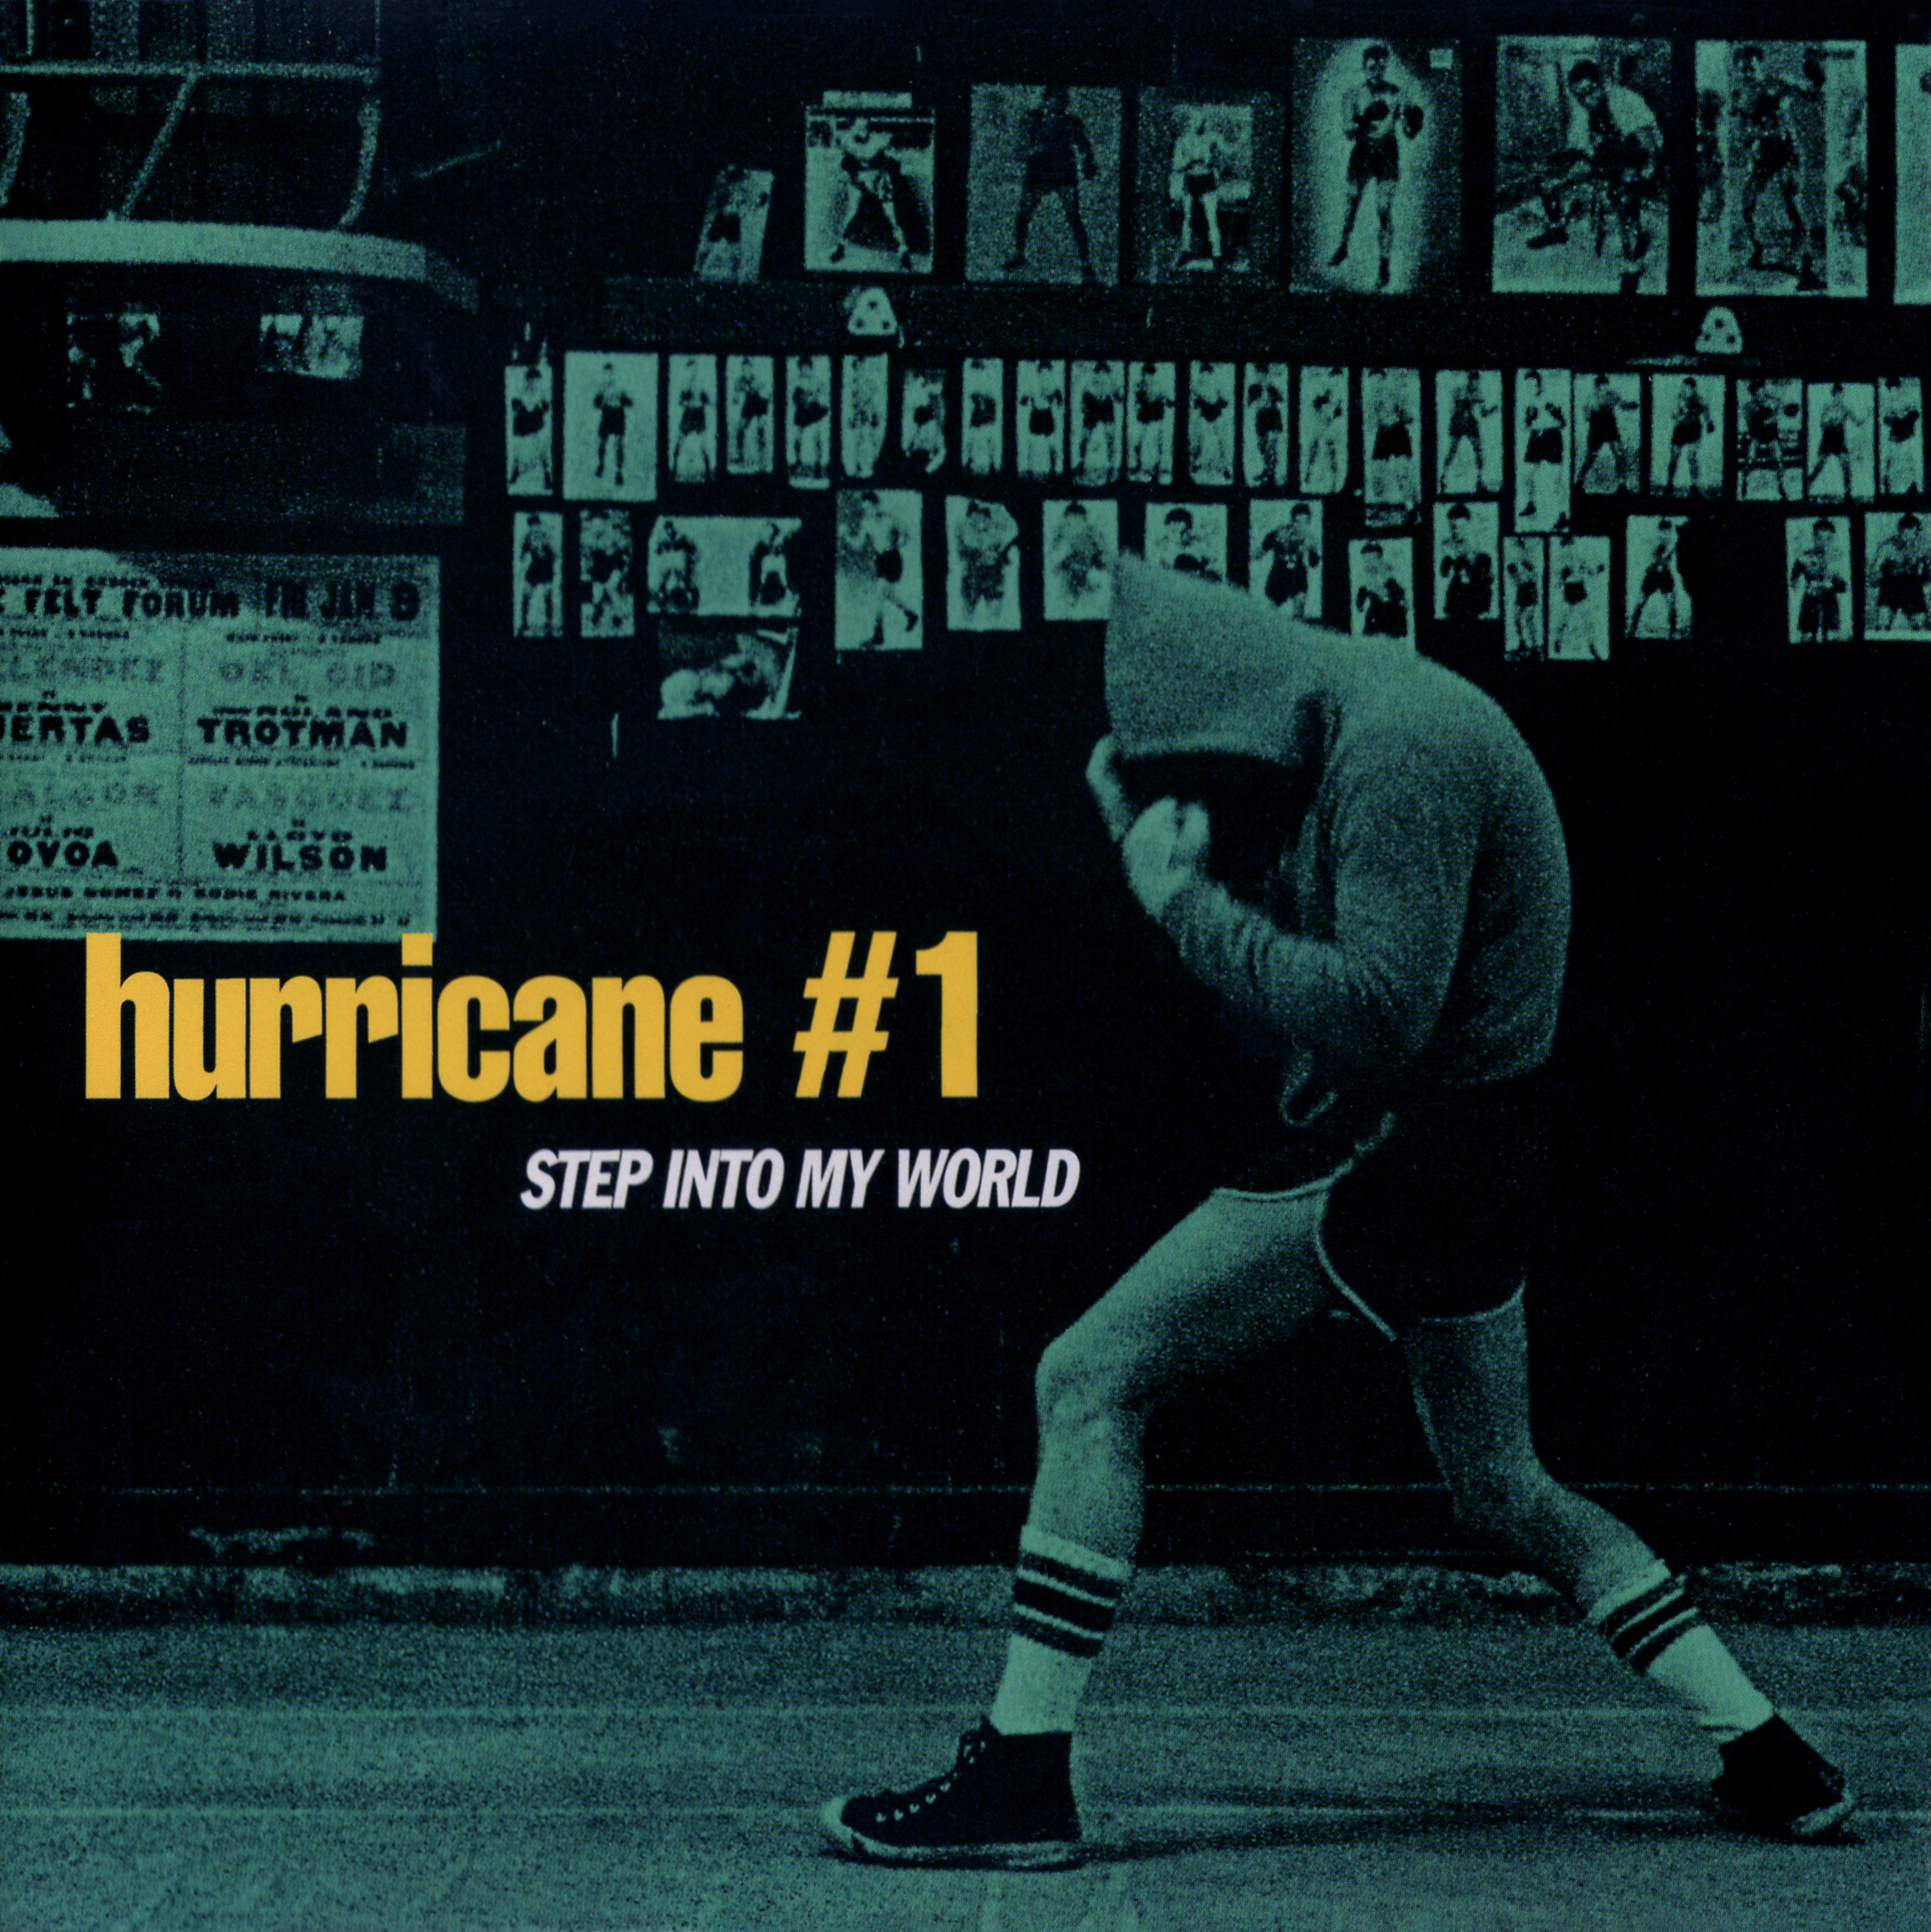 hurricane #1 (ハリケーン #1) シングル『STEP INTO MY WORLD (ステップ・イントゥ・マイ・ワールド)』(日本盤) 高画質CDジャケット画像